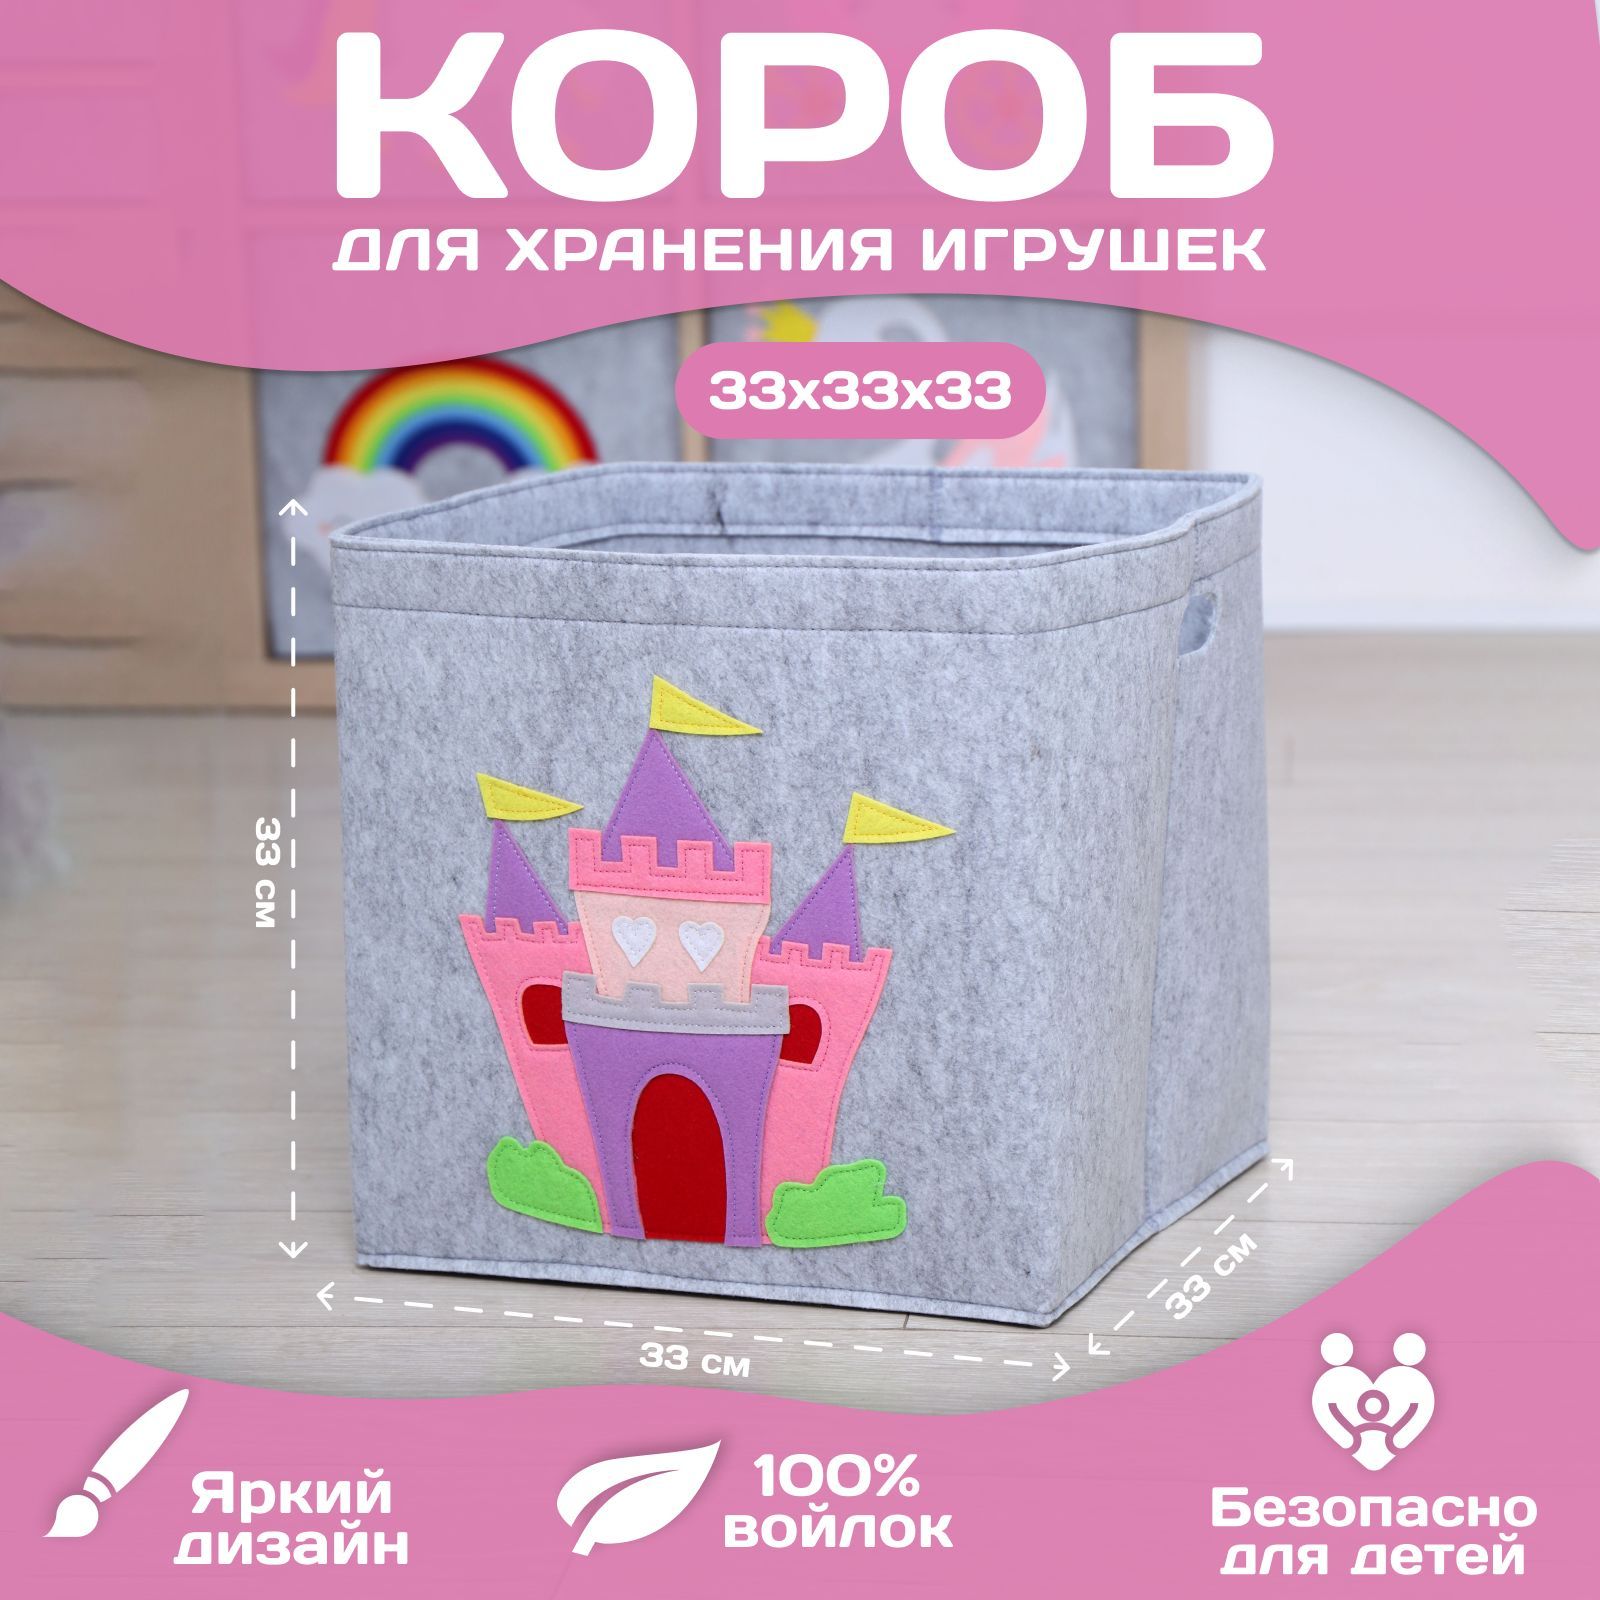 Корзина короб для хранения игрушек HappySava Замок объем 36 литров размер 33x33x33 см